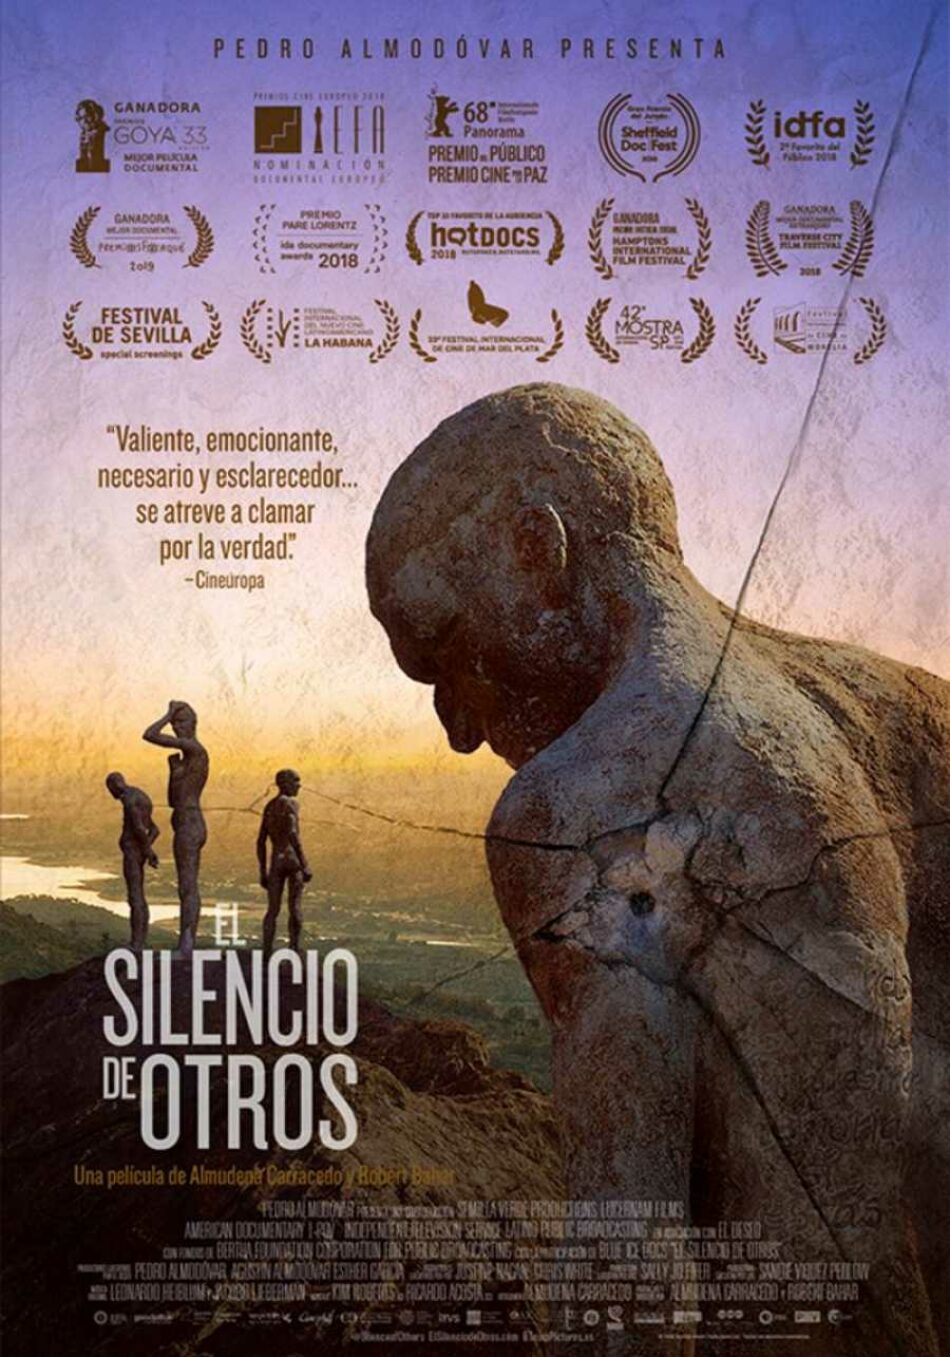 La 2 estrenará el documental ‘El silencio de otros’, Goya 2019 al mejor documental